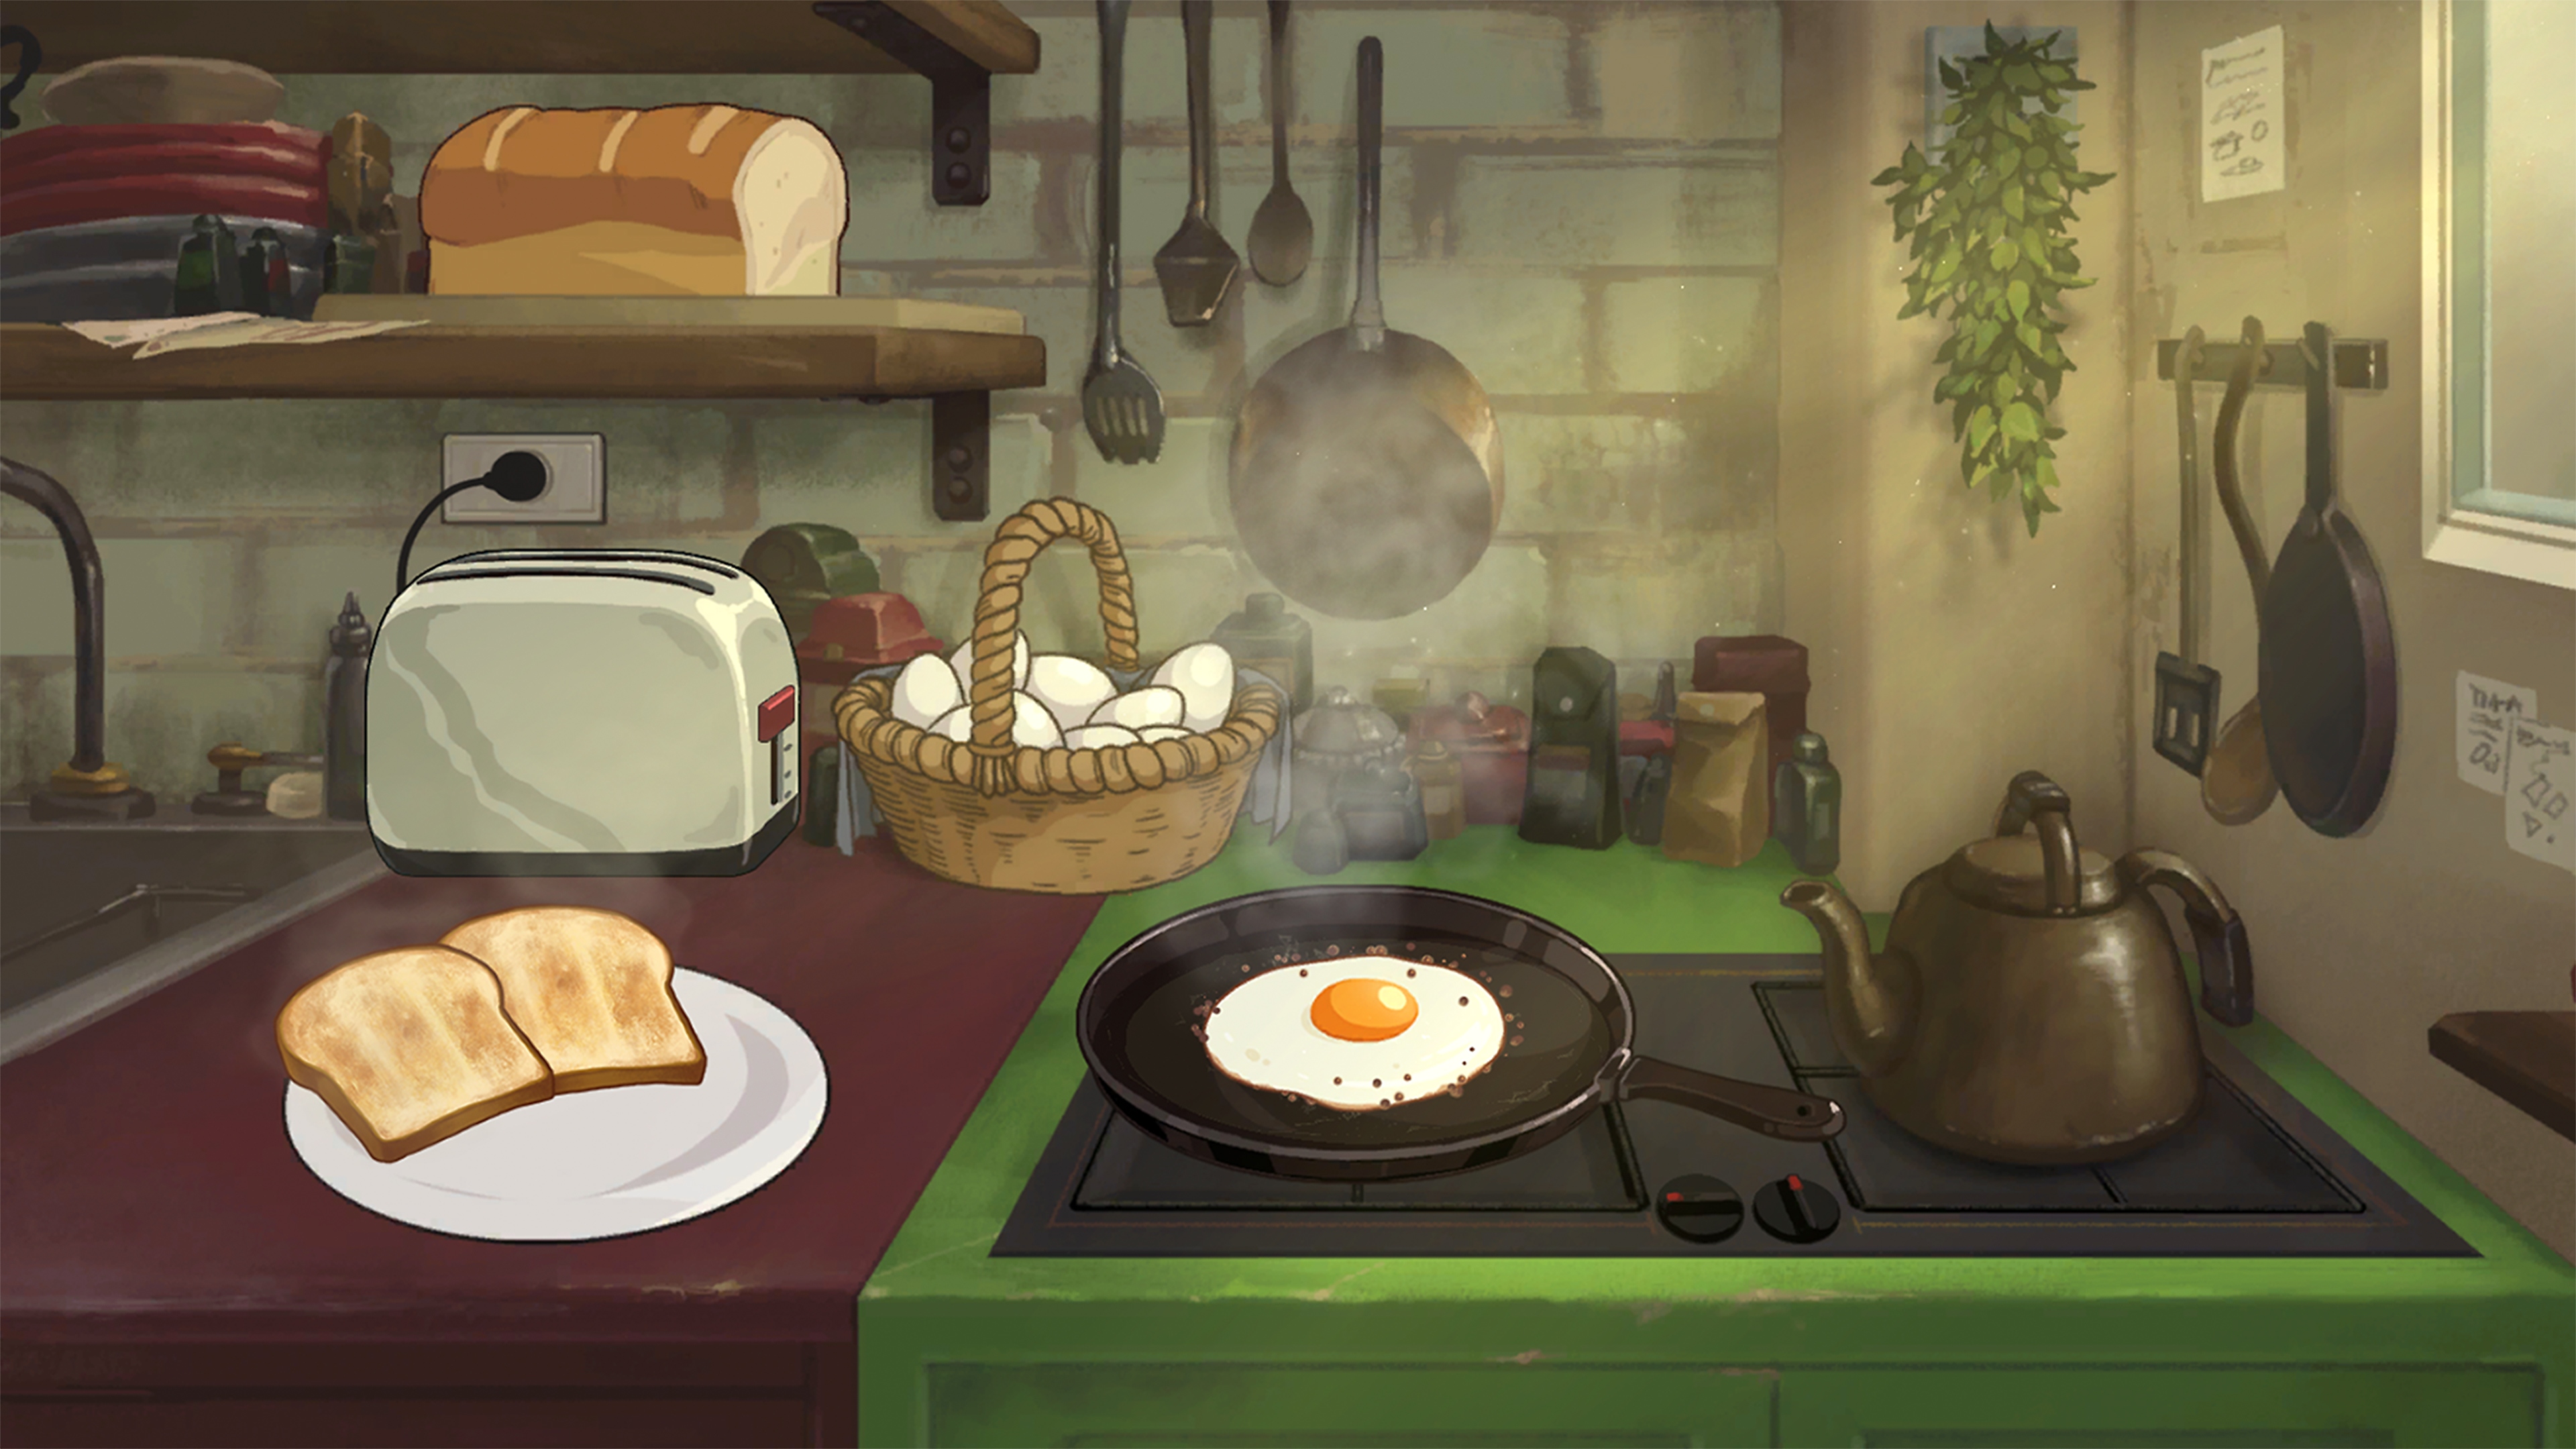 Behind the Frame: The Finest Scenery screenshot waarop ontbijt wordt bereid bij het fornuis